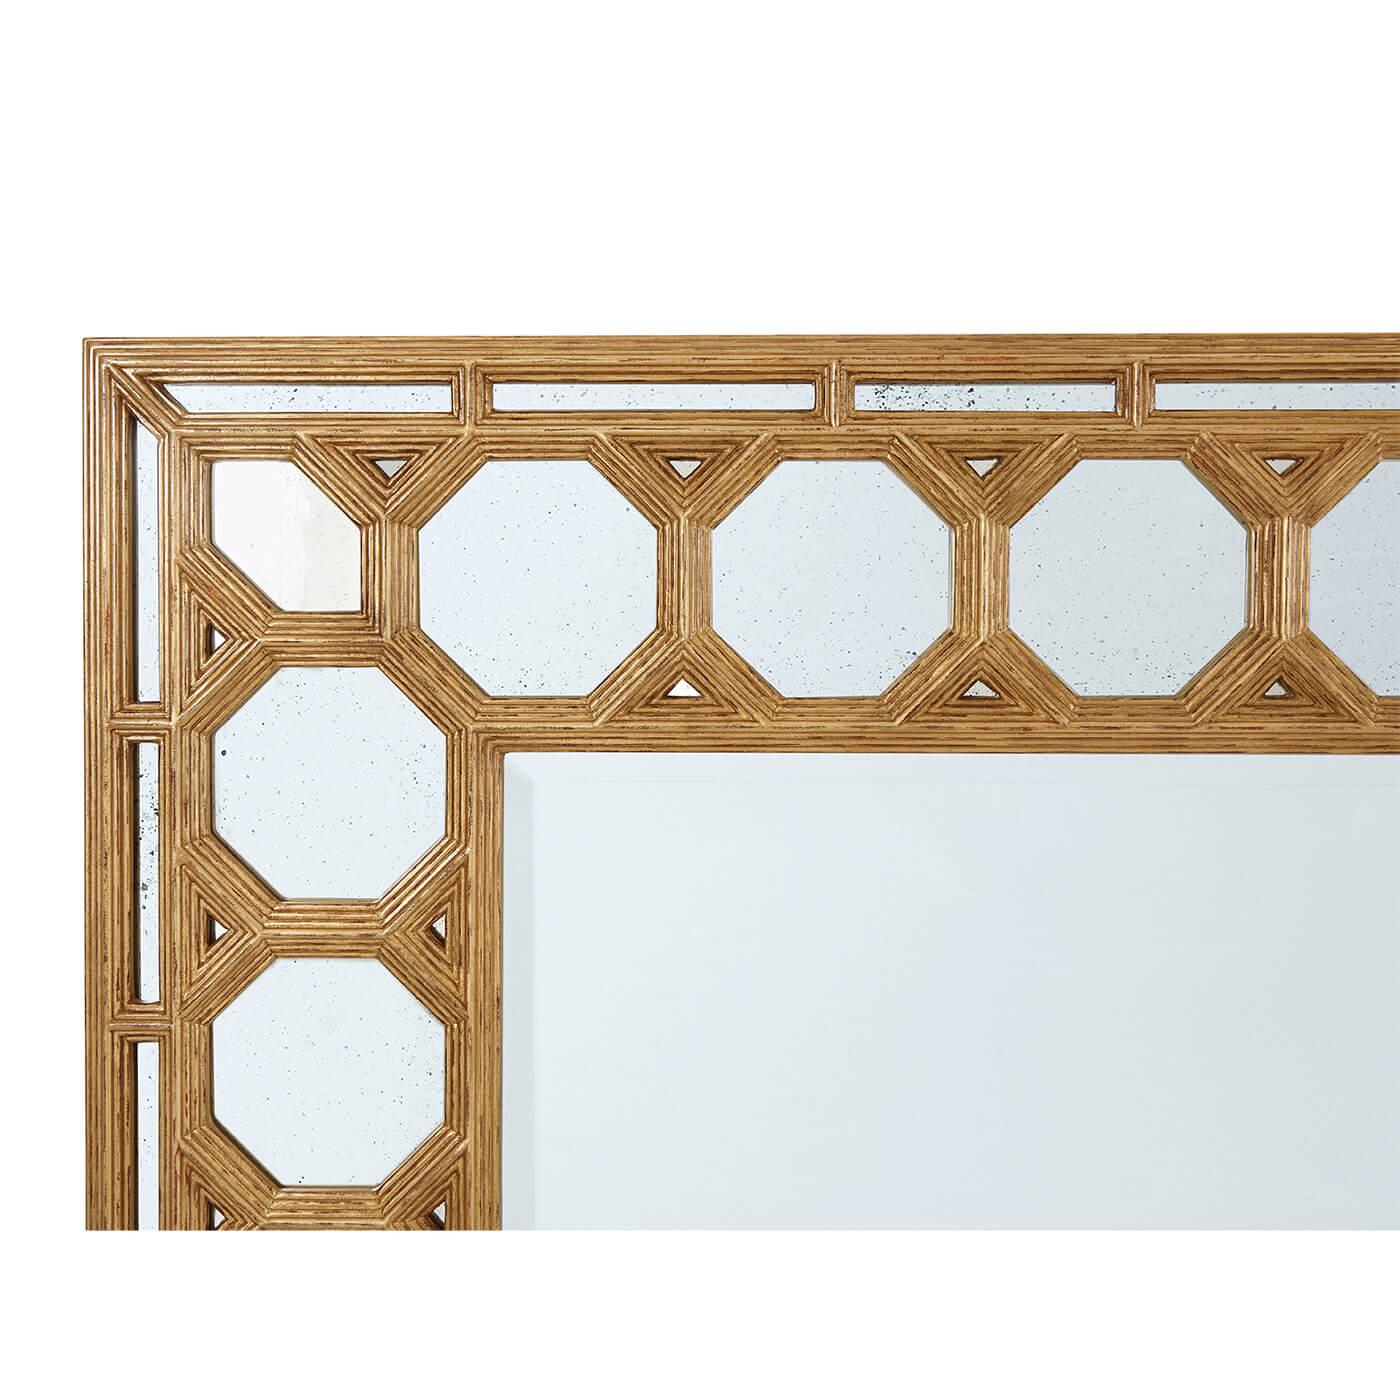 Ein vergoldeter Spiegel im spanischen Barockstil. Dieser antike Spiegel mit abgeschrägter Kante ist in einen Rahmen aus aufeinanderfolgenden achteckigen Kassetten-Spiegelplatten eingefasst. Die Optik dieses dekorativen Spiegels ist wunderschön. Kann